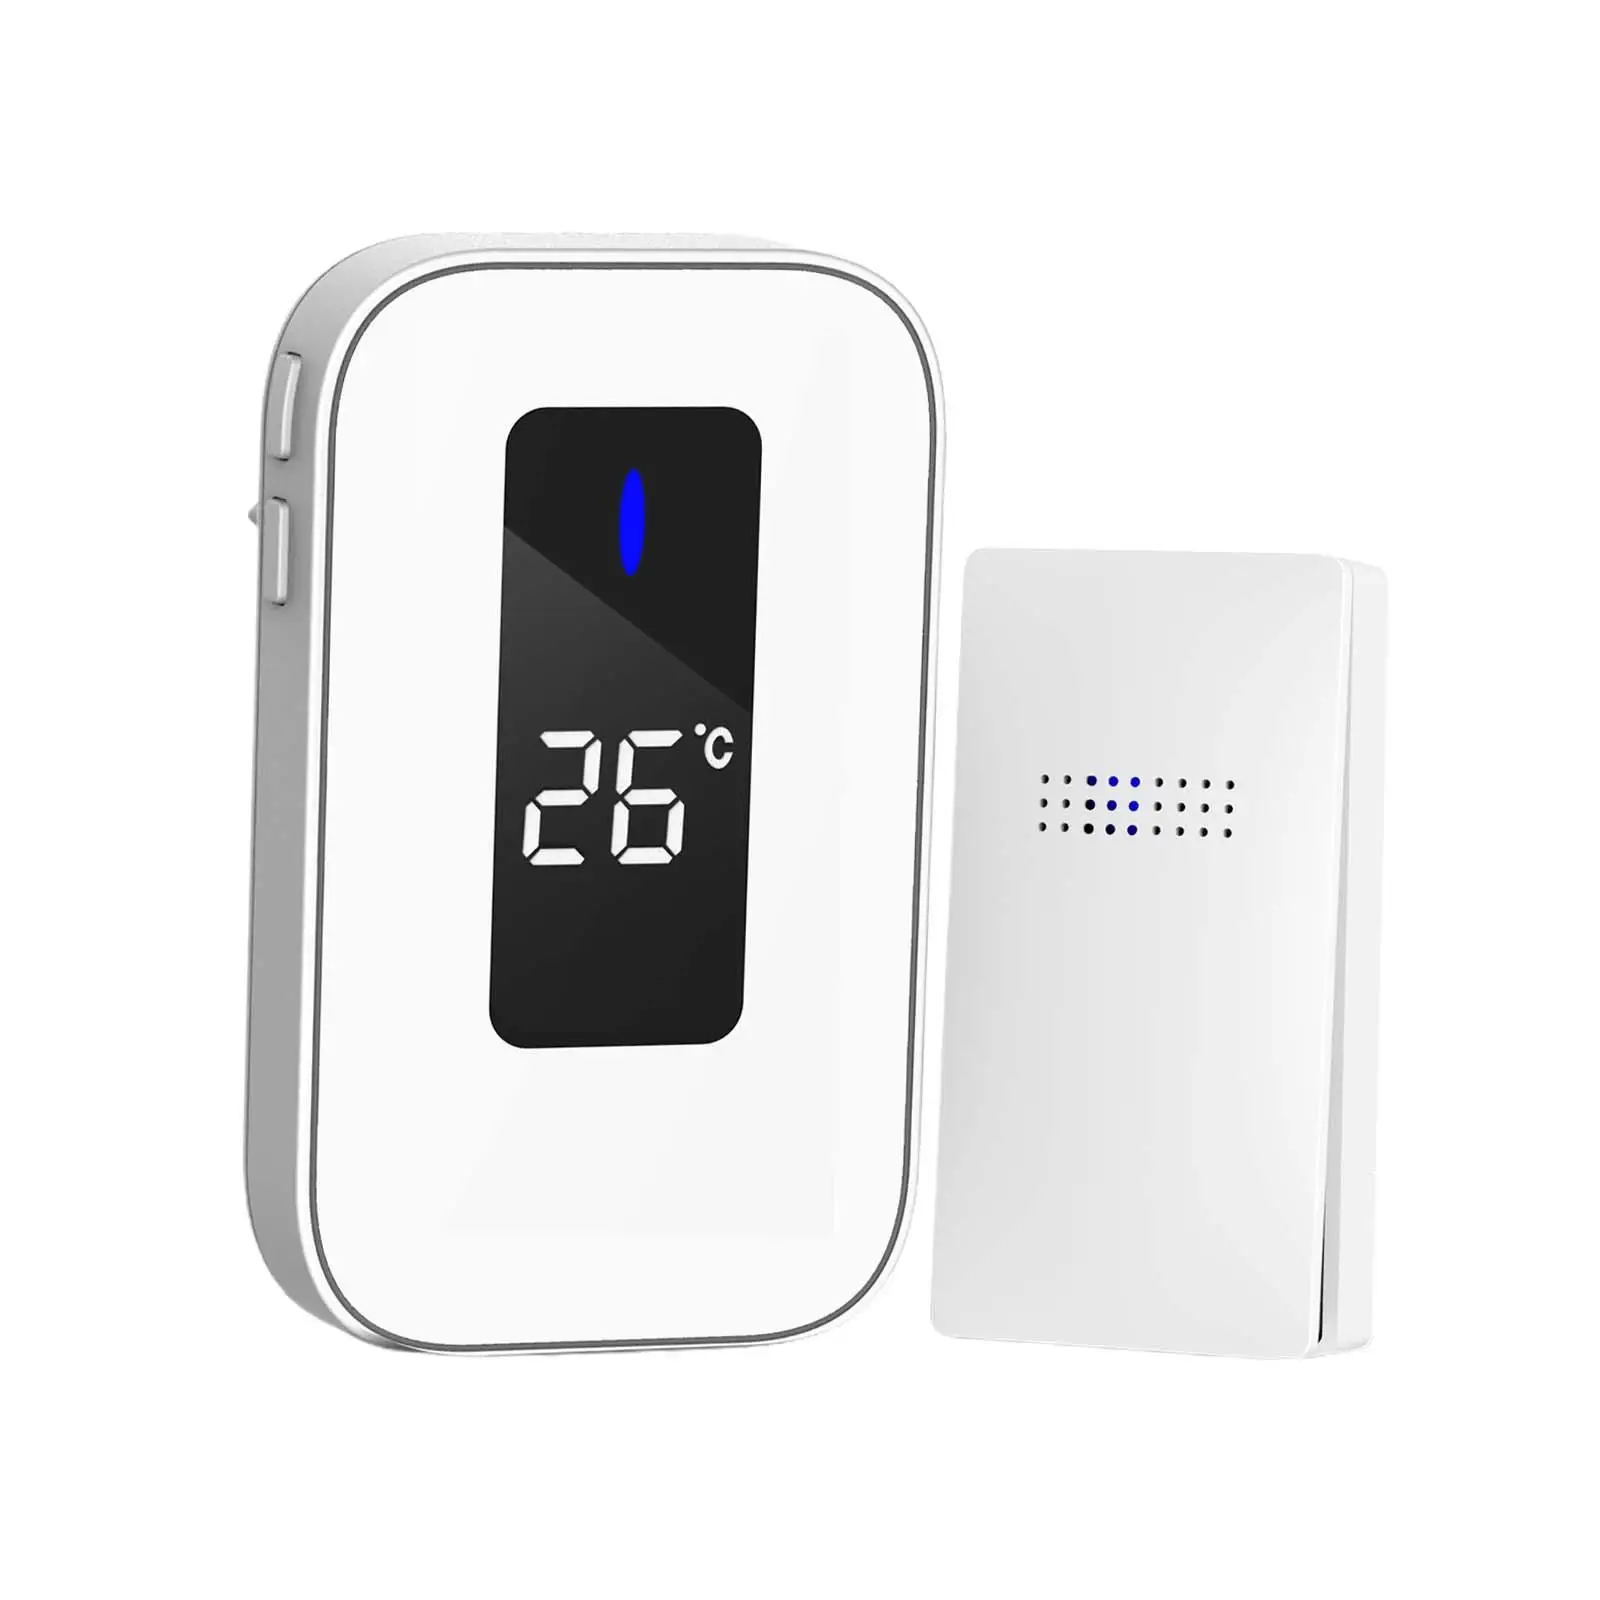 Outdoor Wireless Doorbell Easy Installation LED Display Upgraded WiFi Doorbell Smart for Office Outdoor Wall Home School